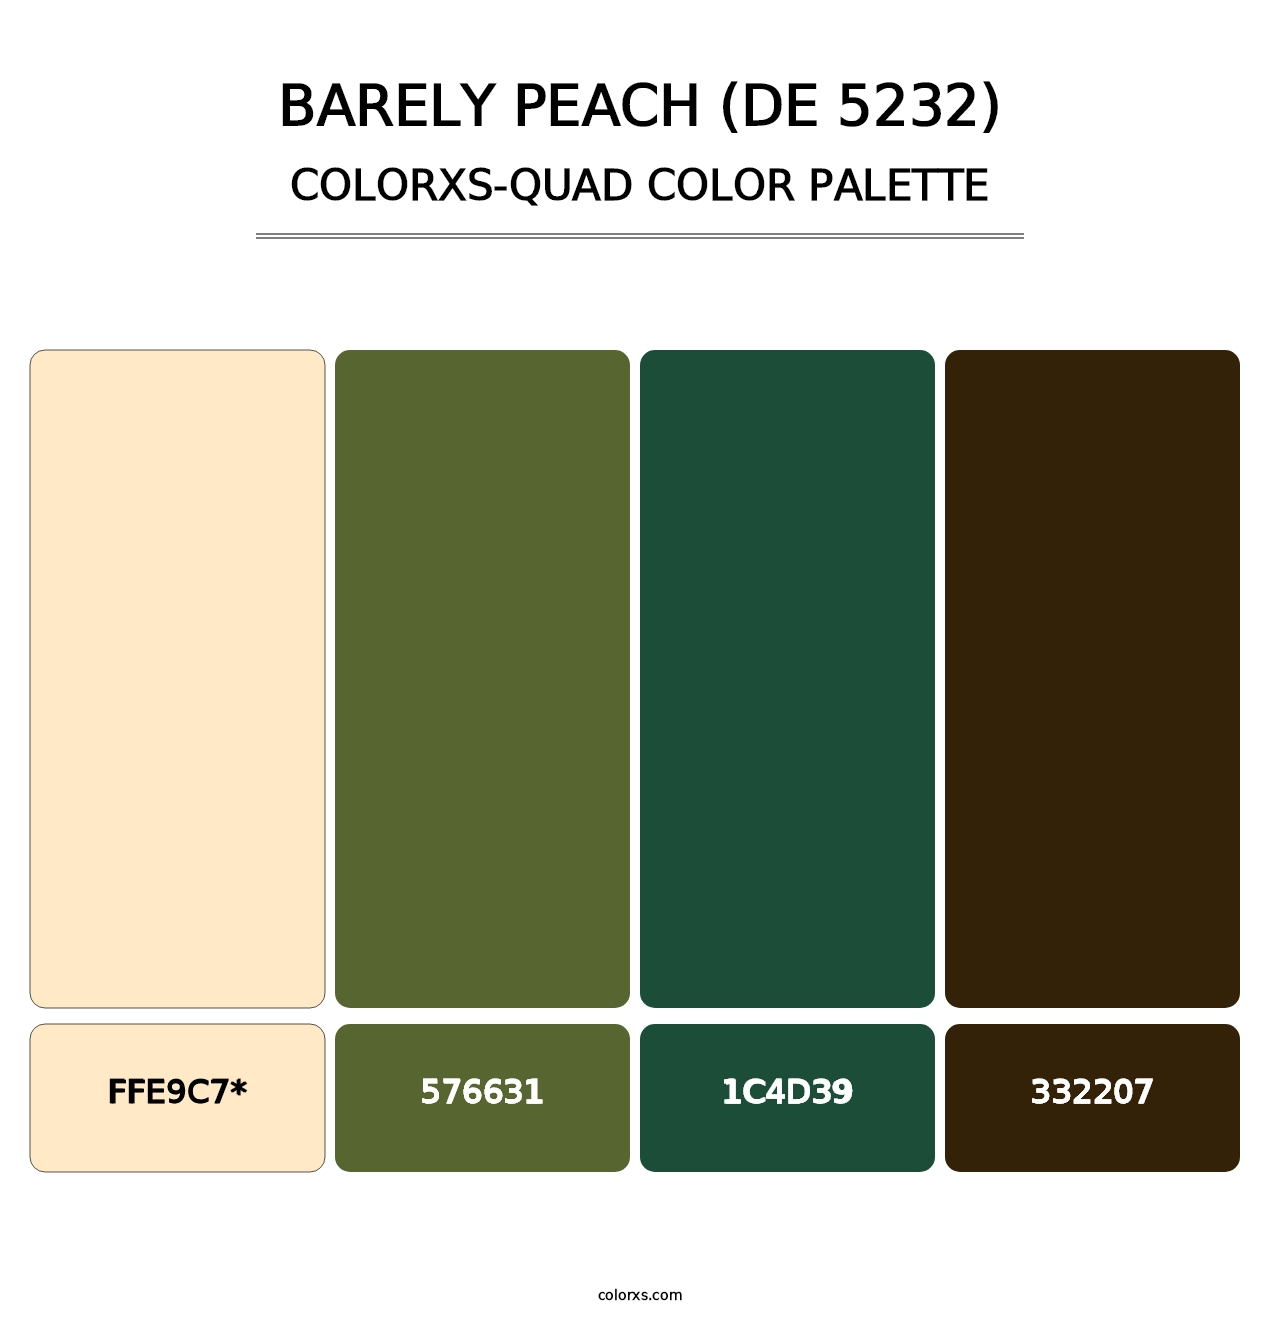 Barely Peach (DE 5232) - Colorxs Quad Palette